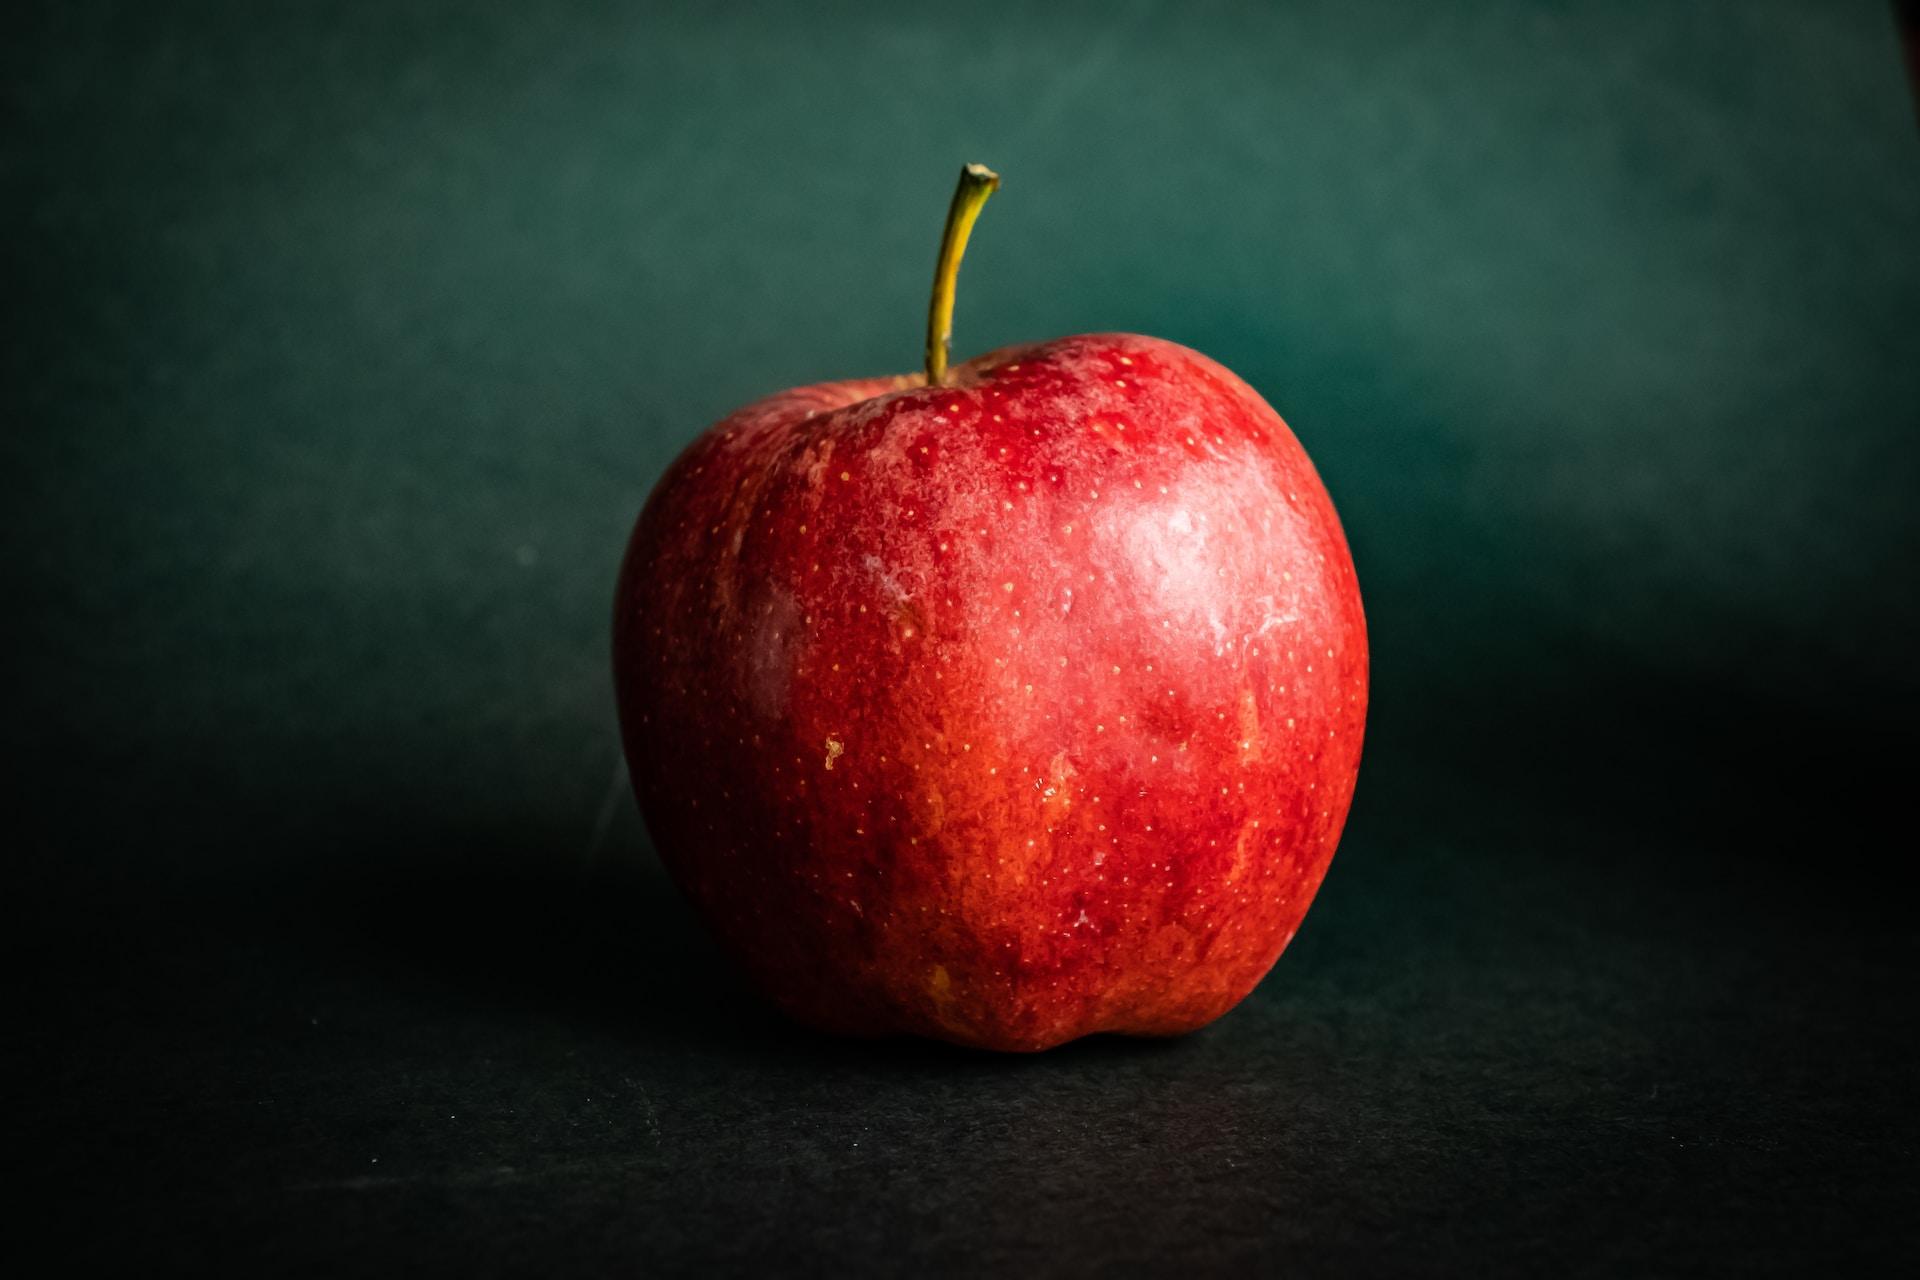 Jedna jabuka na dan tjera doktora iz kuće van! Činjenica ili izmišljotina?